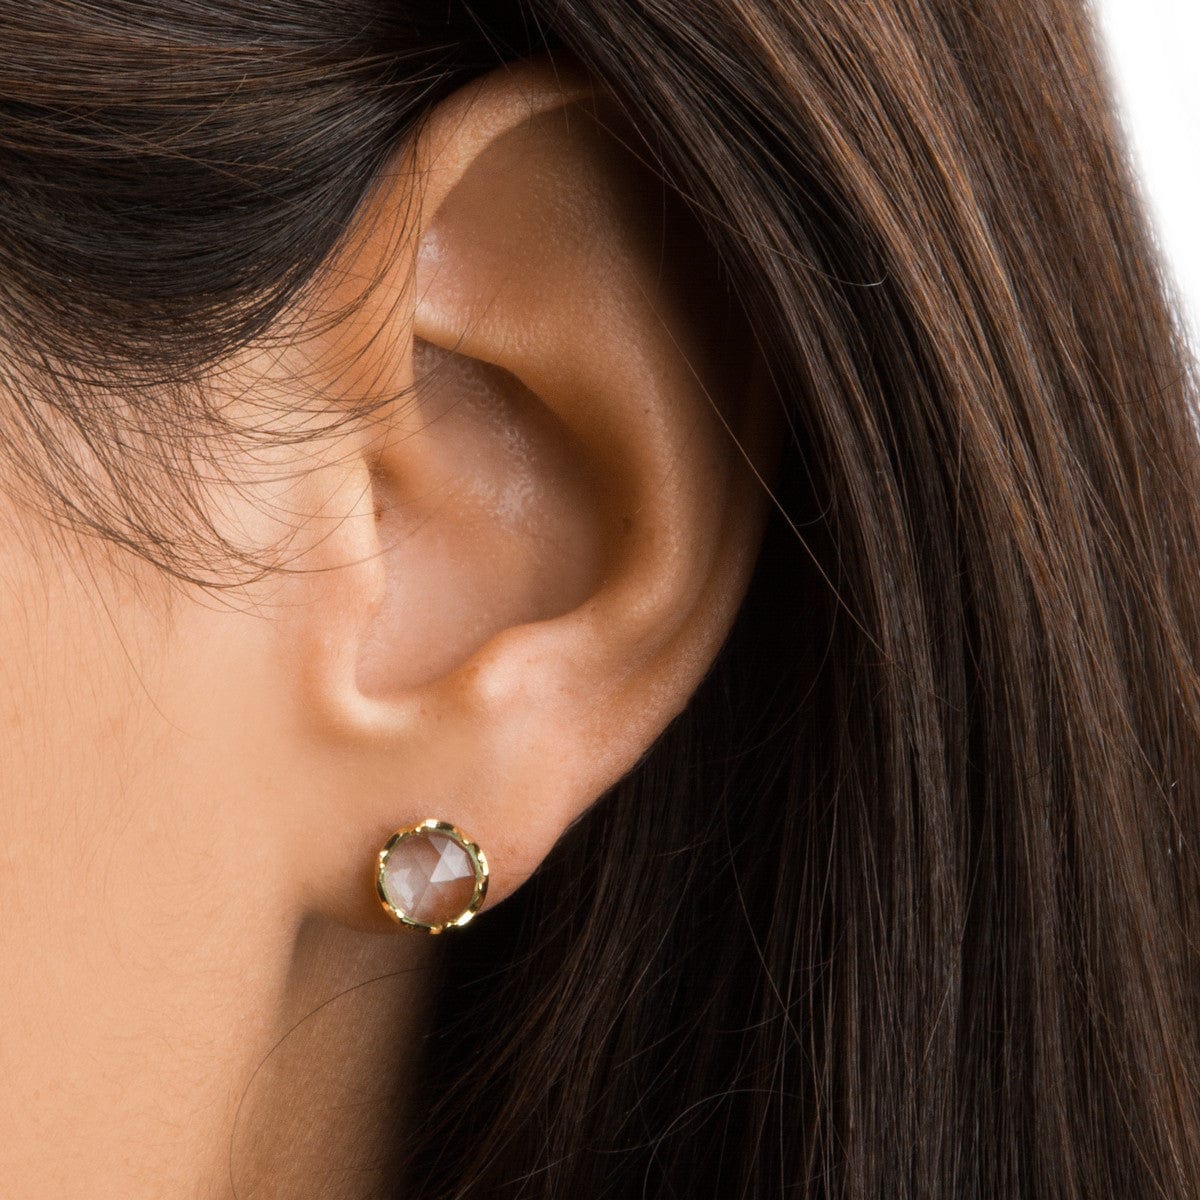 TAI JEWELRY Earrings Large Glass Earrings